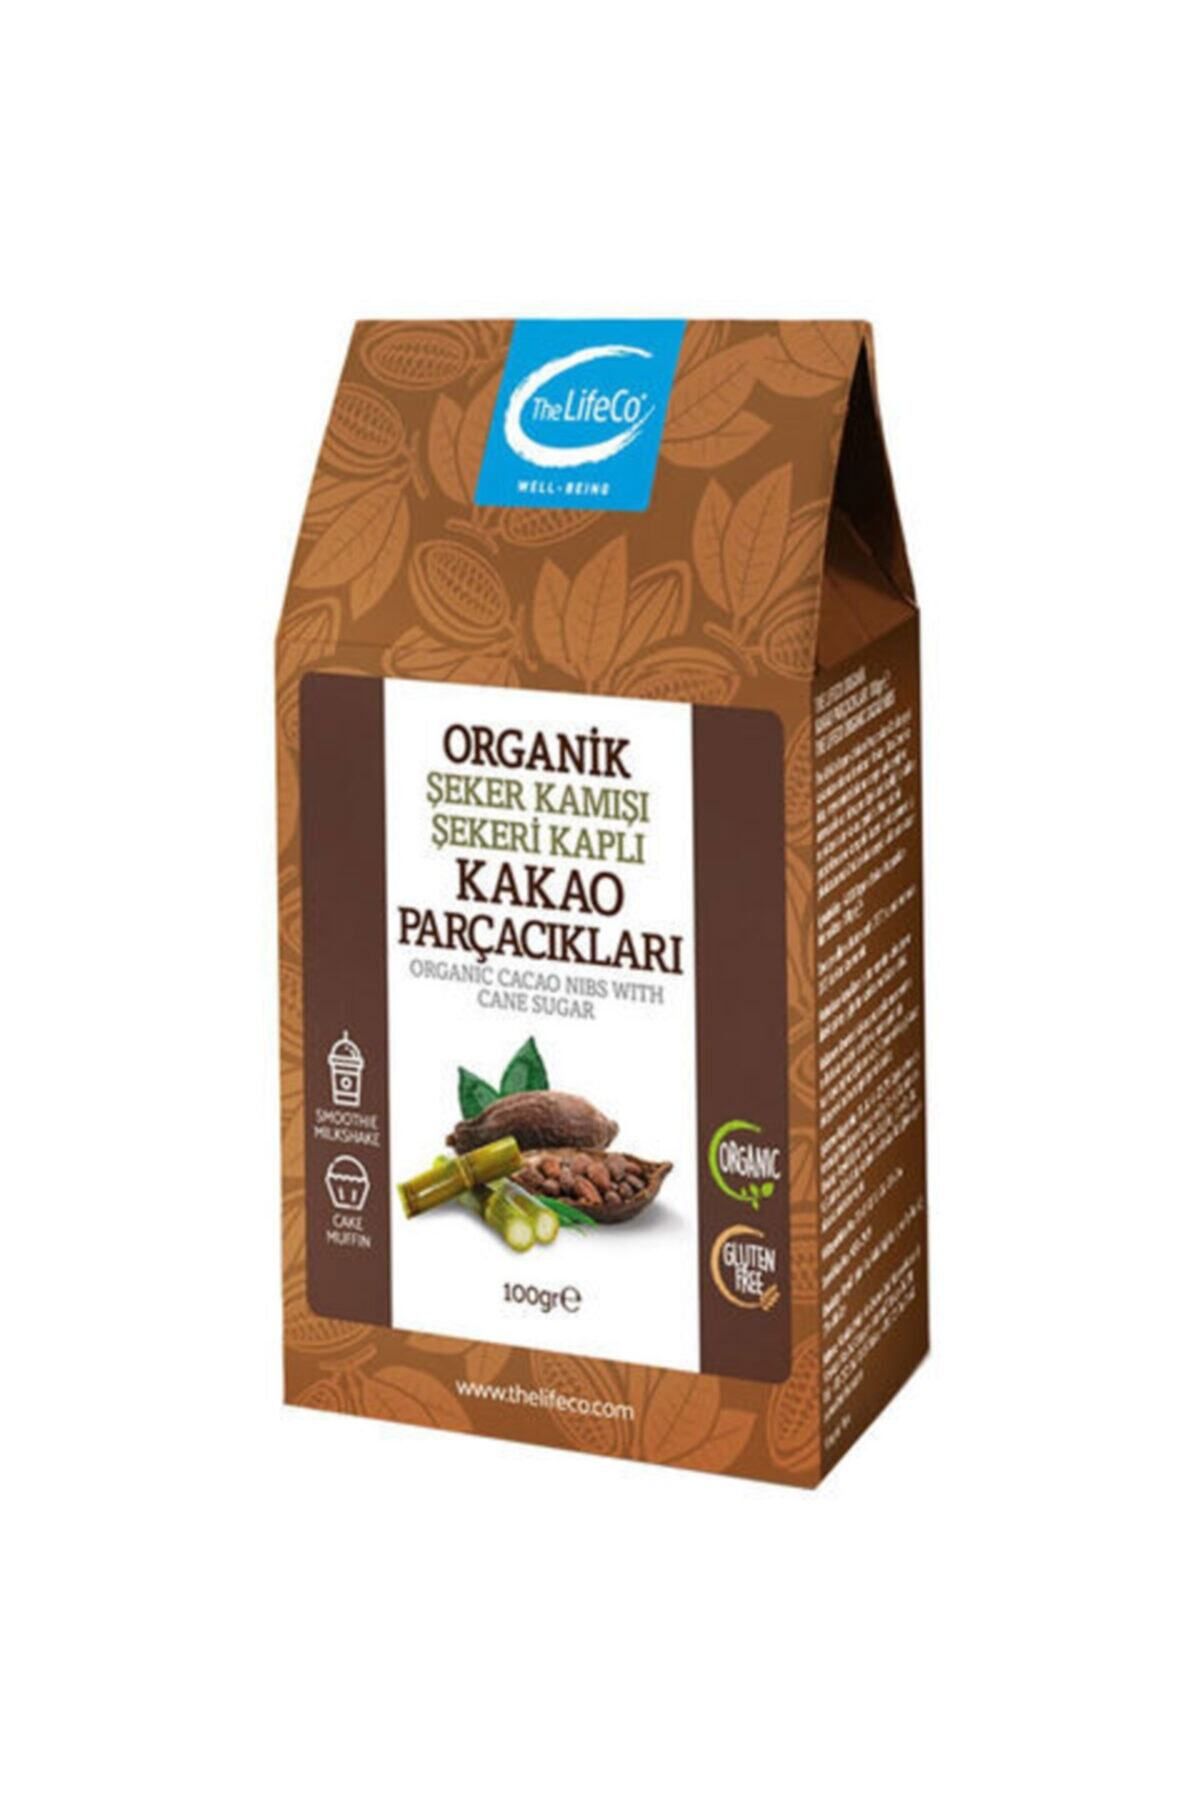 TheLifeCo Organik Şeker Kamışı Kaplı Kakao Parçacıkları 100 G (GLUTENSİZ)